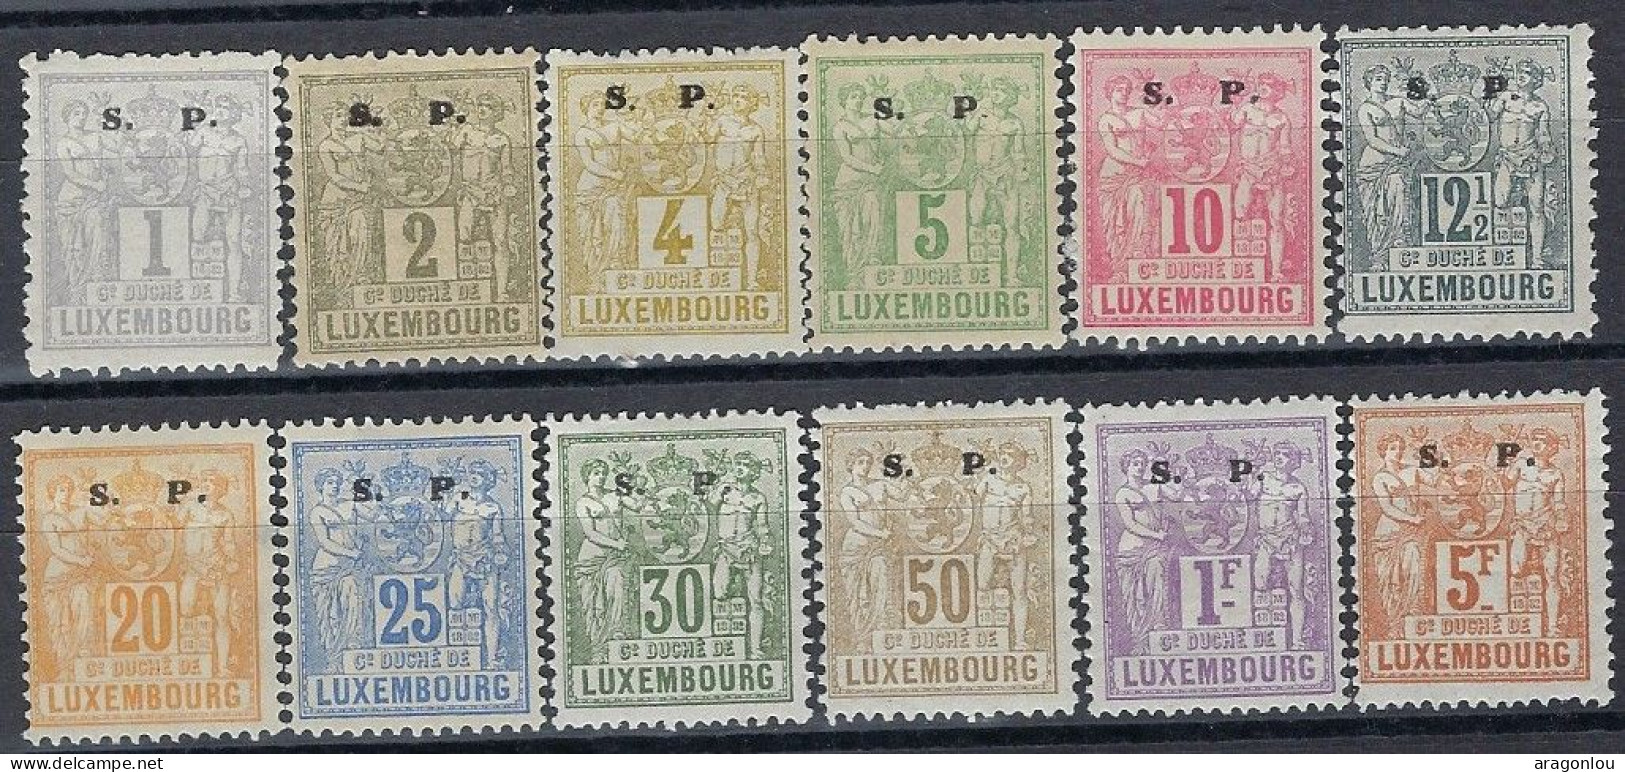 Luxembourg - Luxemburg - Timbres - 1883   Allégorie   Série   S.P.   *   VC. 250,- - 1882 Allégorie